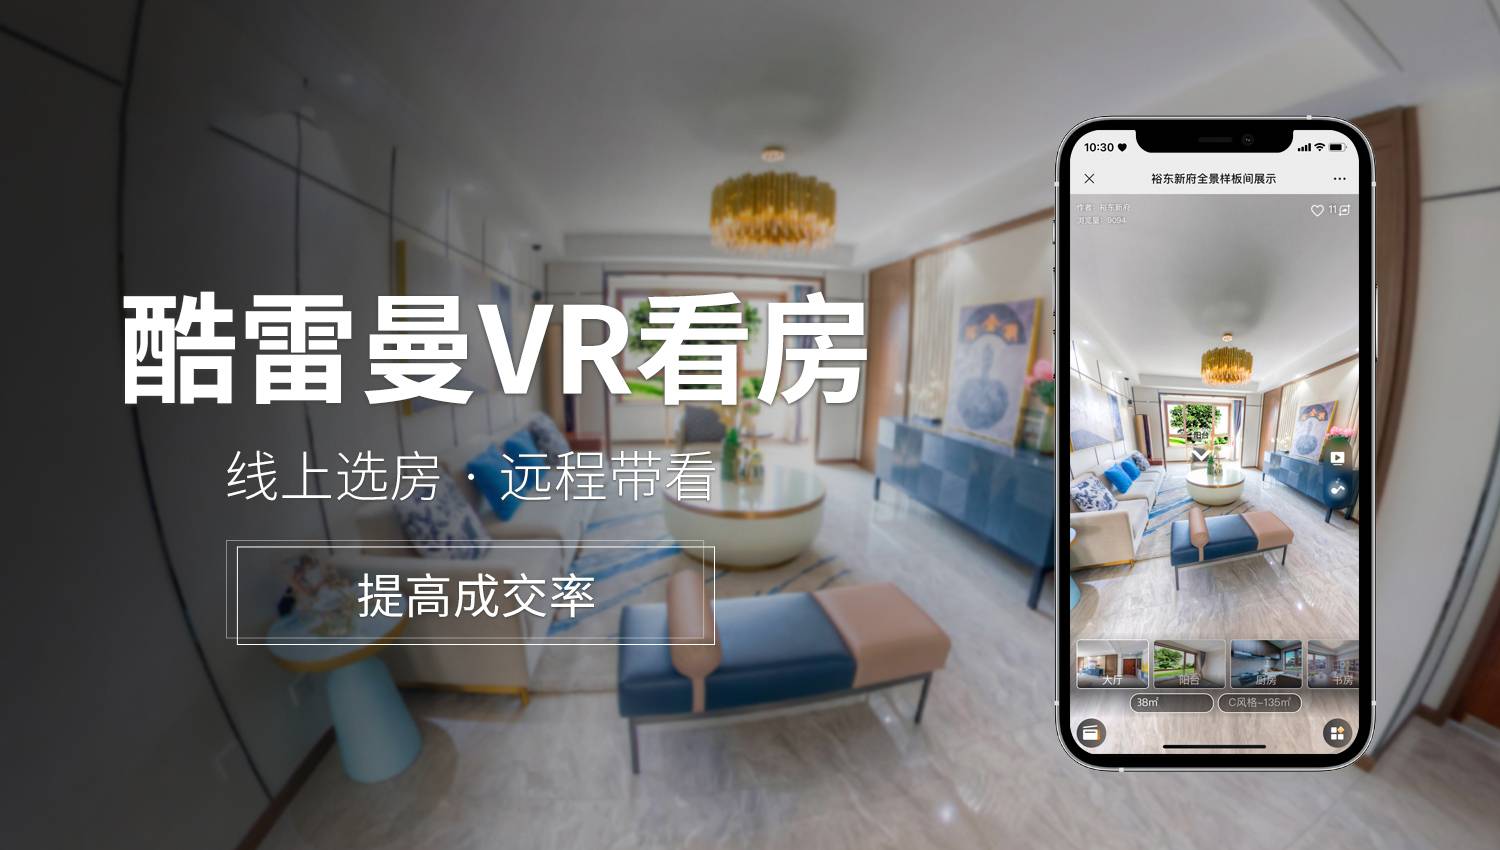 VR酒店的应用模式将成为行业内新趋势！